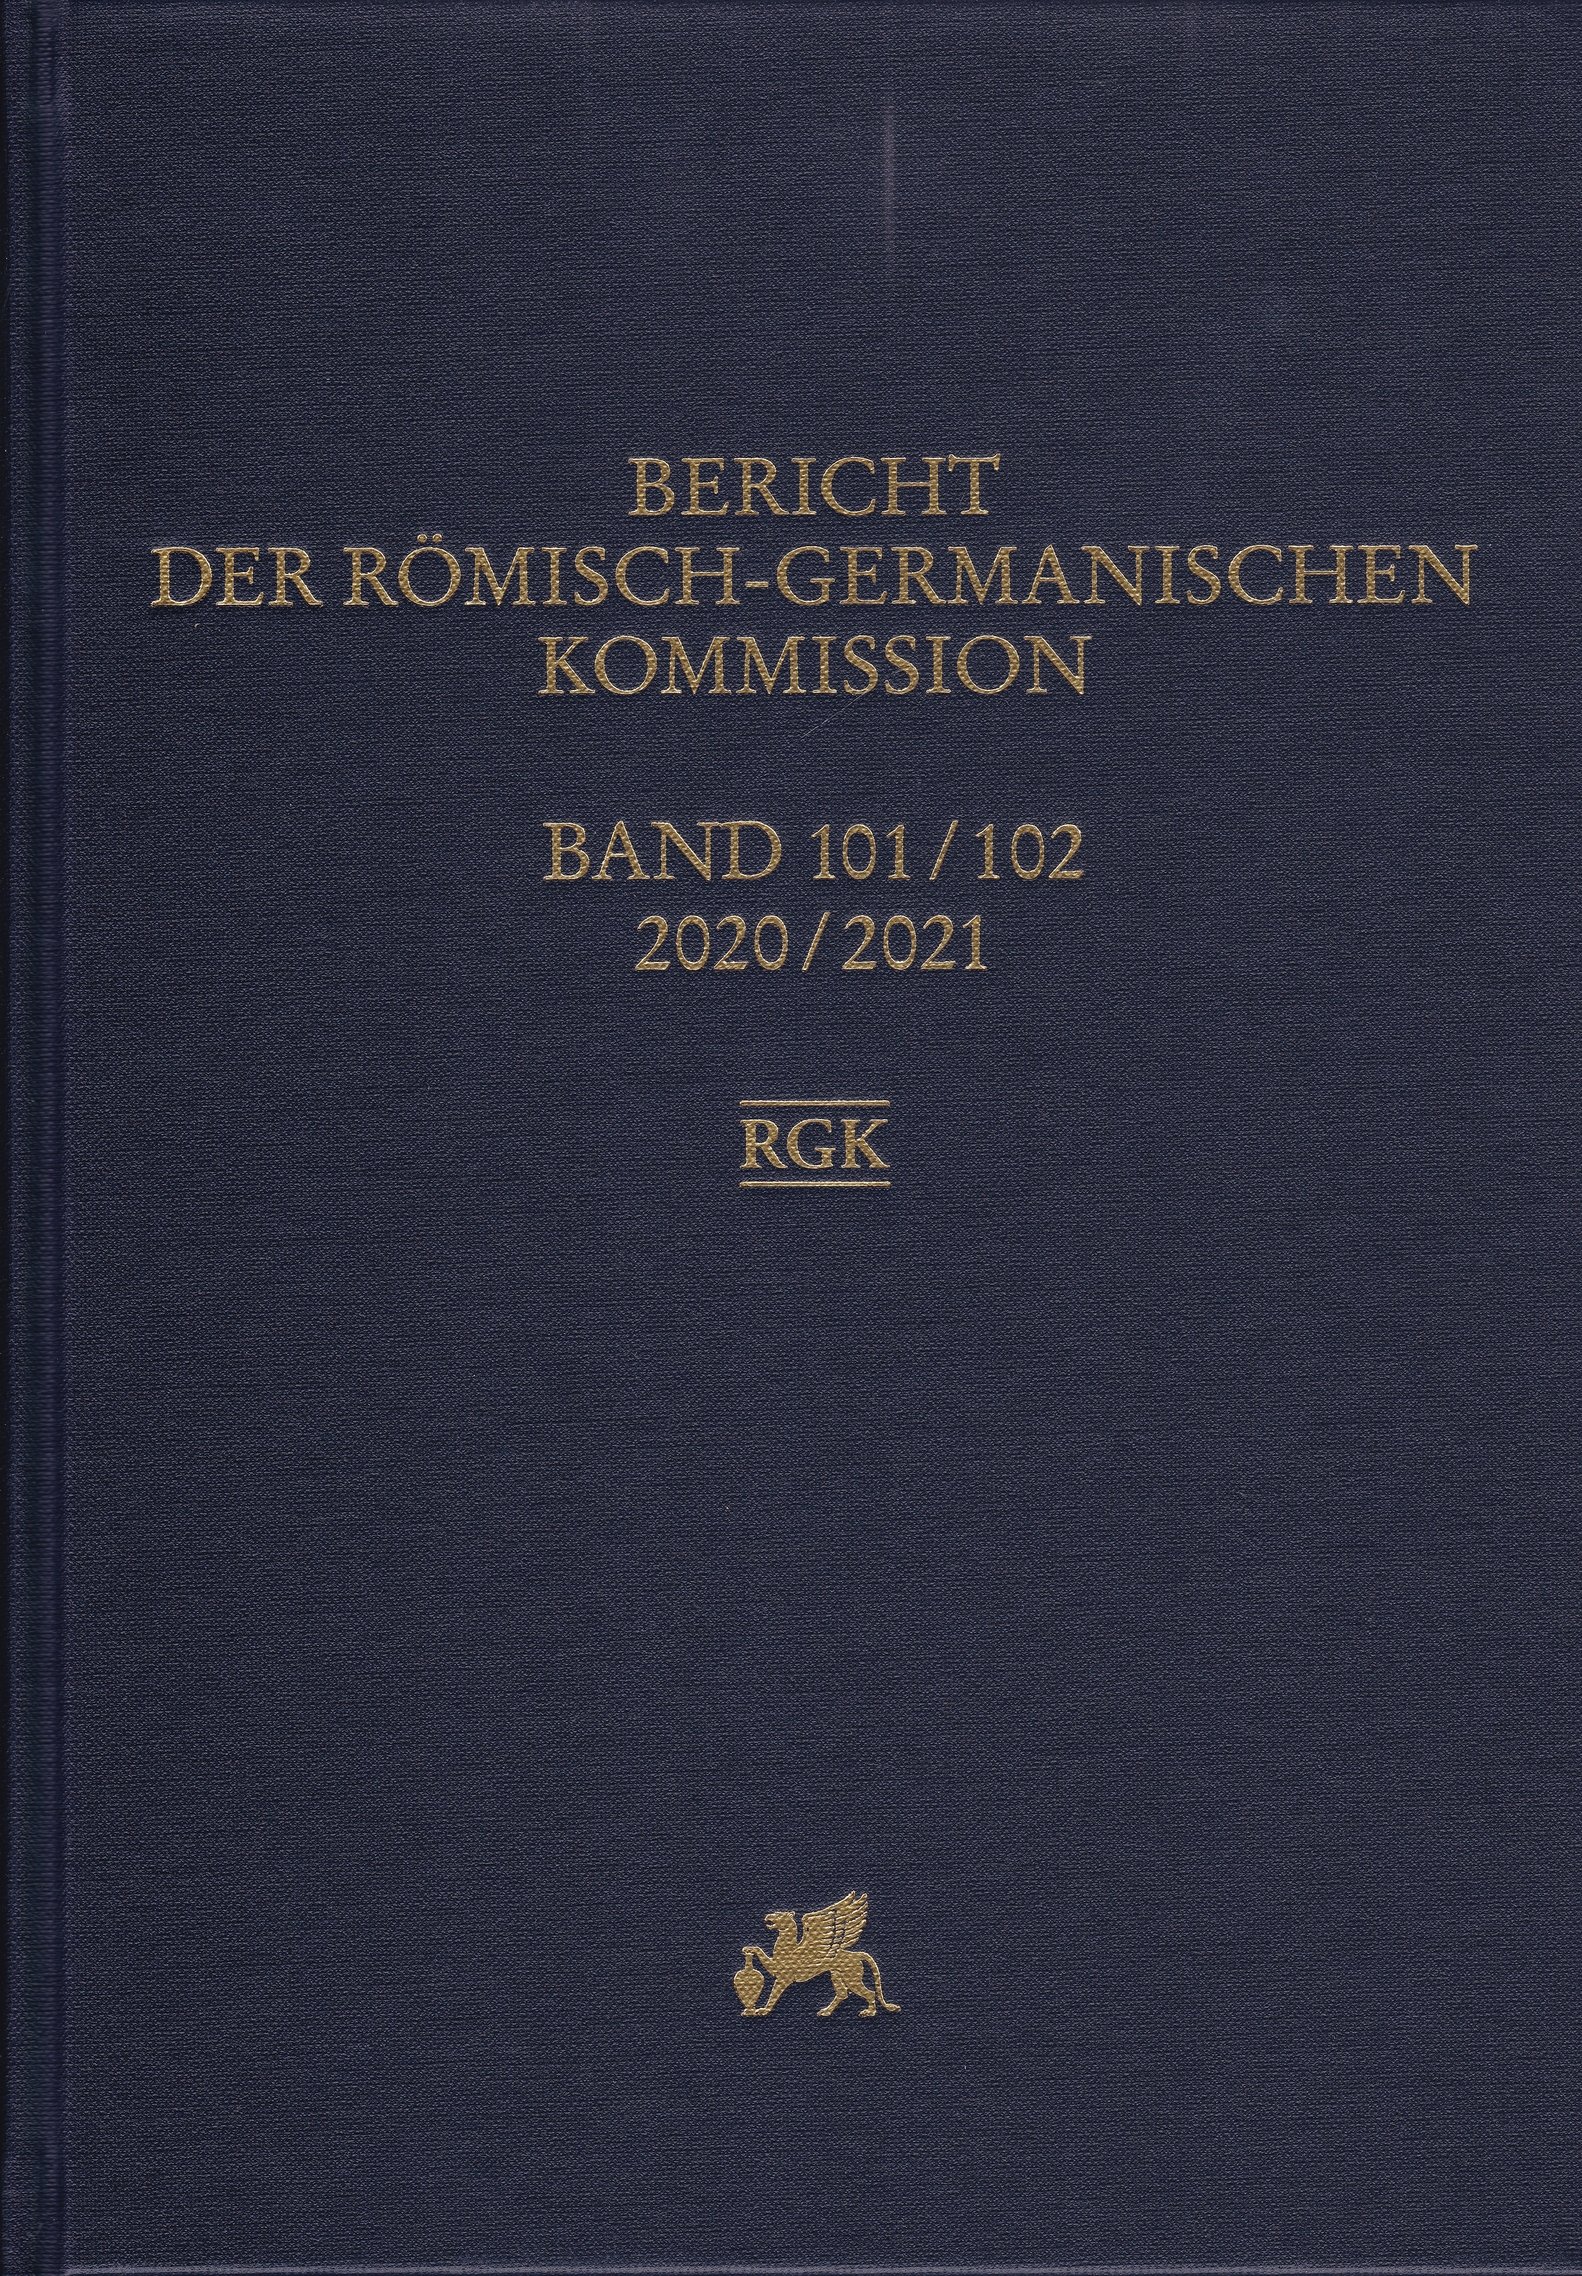 Bericht der Römisch-Germanischen Kommission 2020-2021/101-102. kötet (Rippl-Rónai Múzeum CC BY-NC-ND)